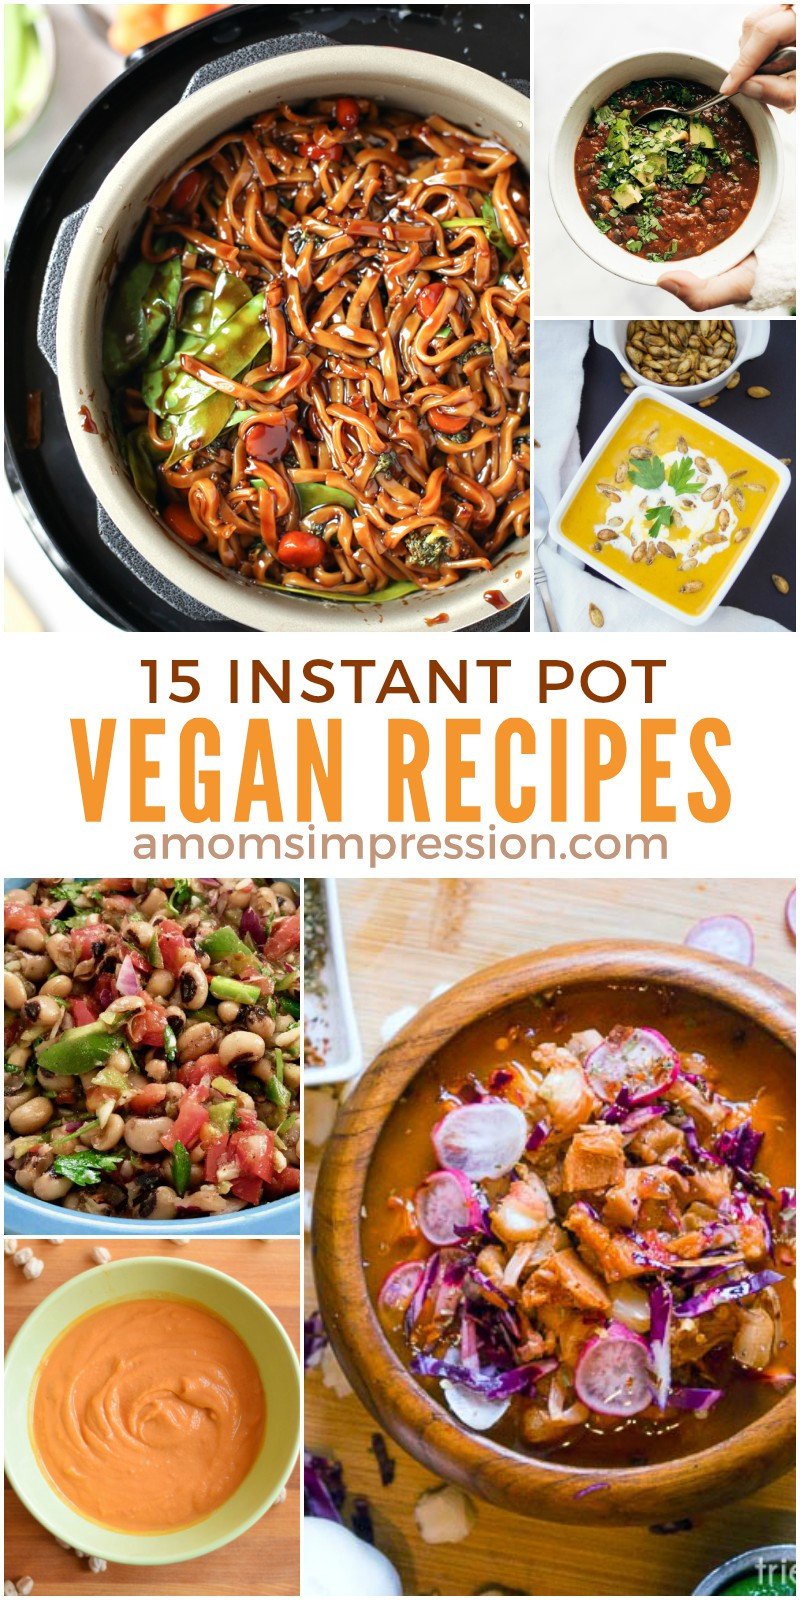 Instant Pot Vegetarian Recipes
 15 Healthy and Delicious Vegan Instant Pot Recipes